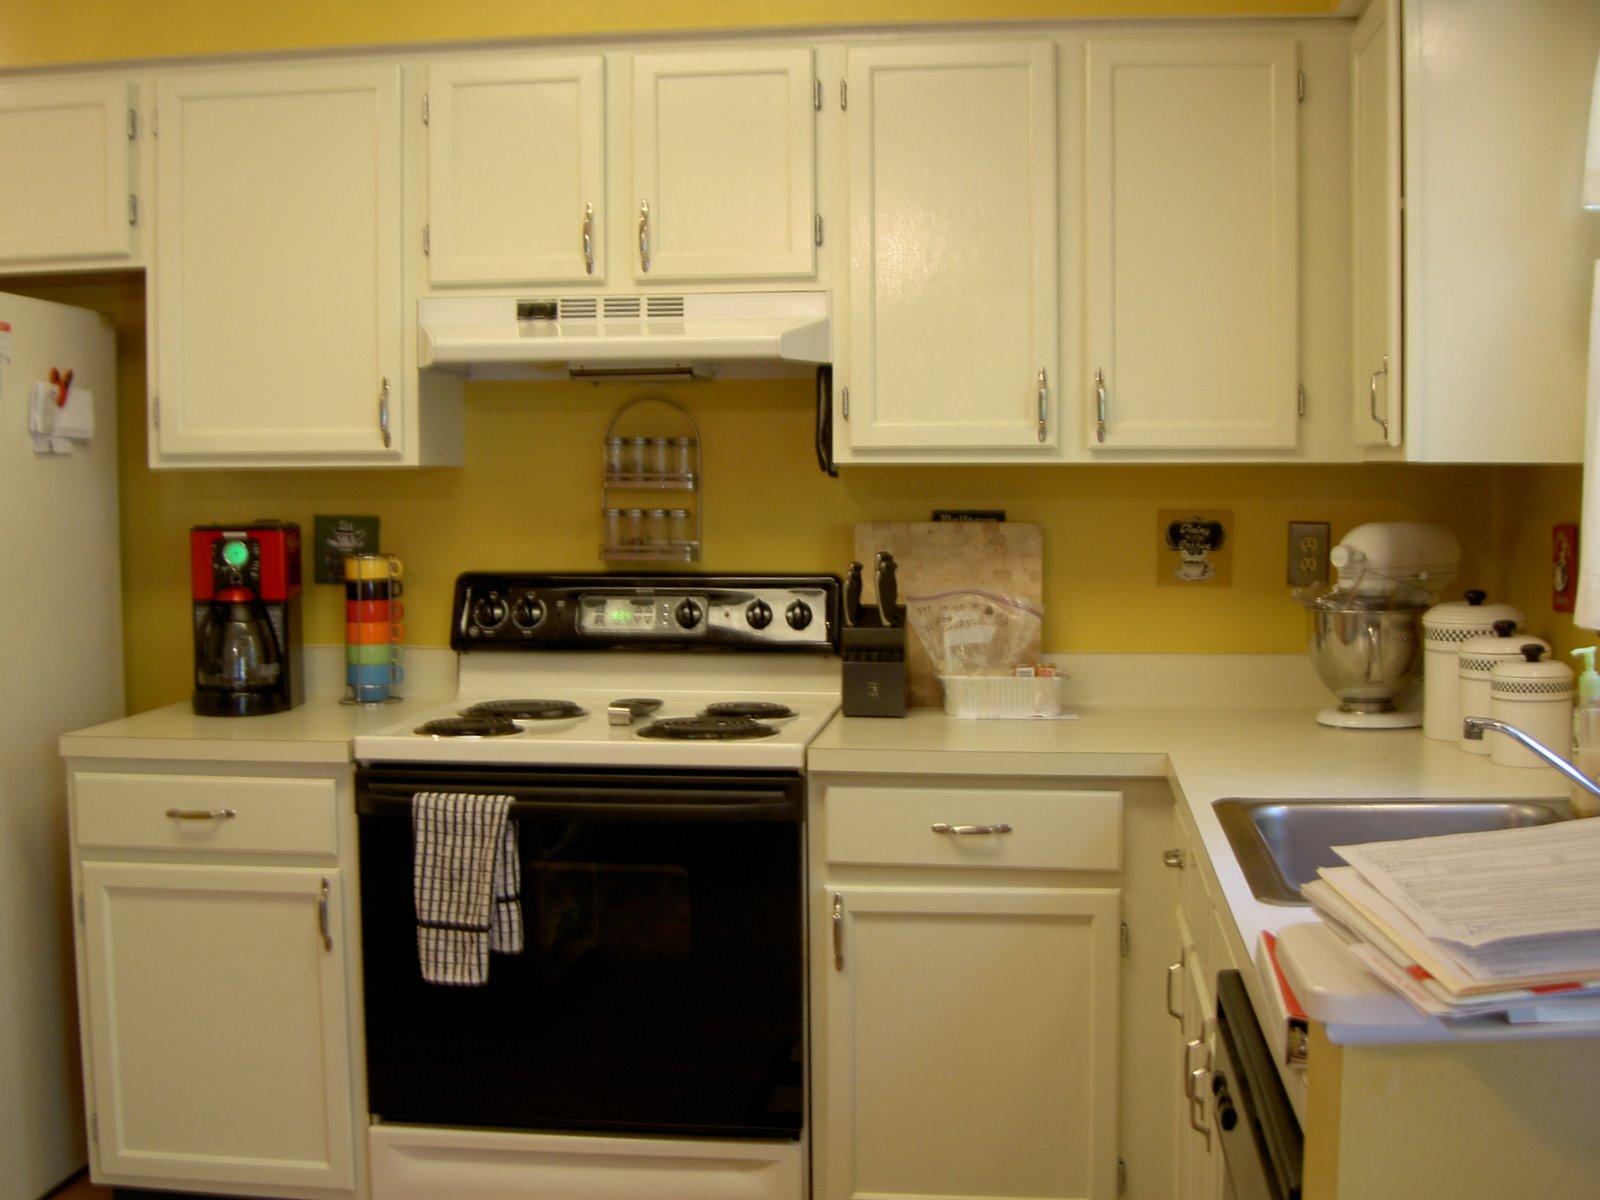 White Kitchens With Black Appliances